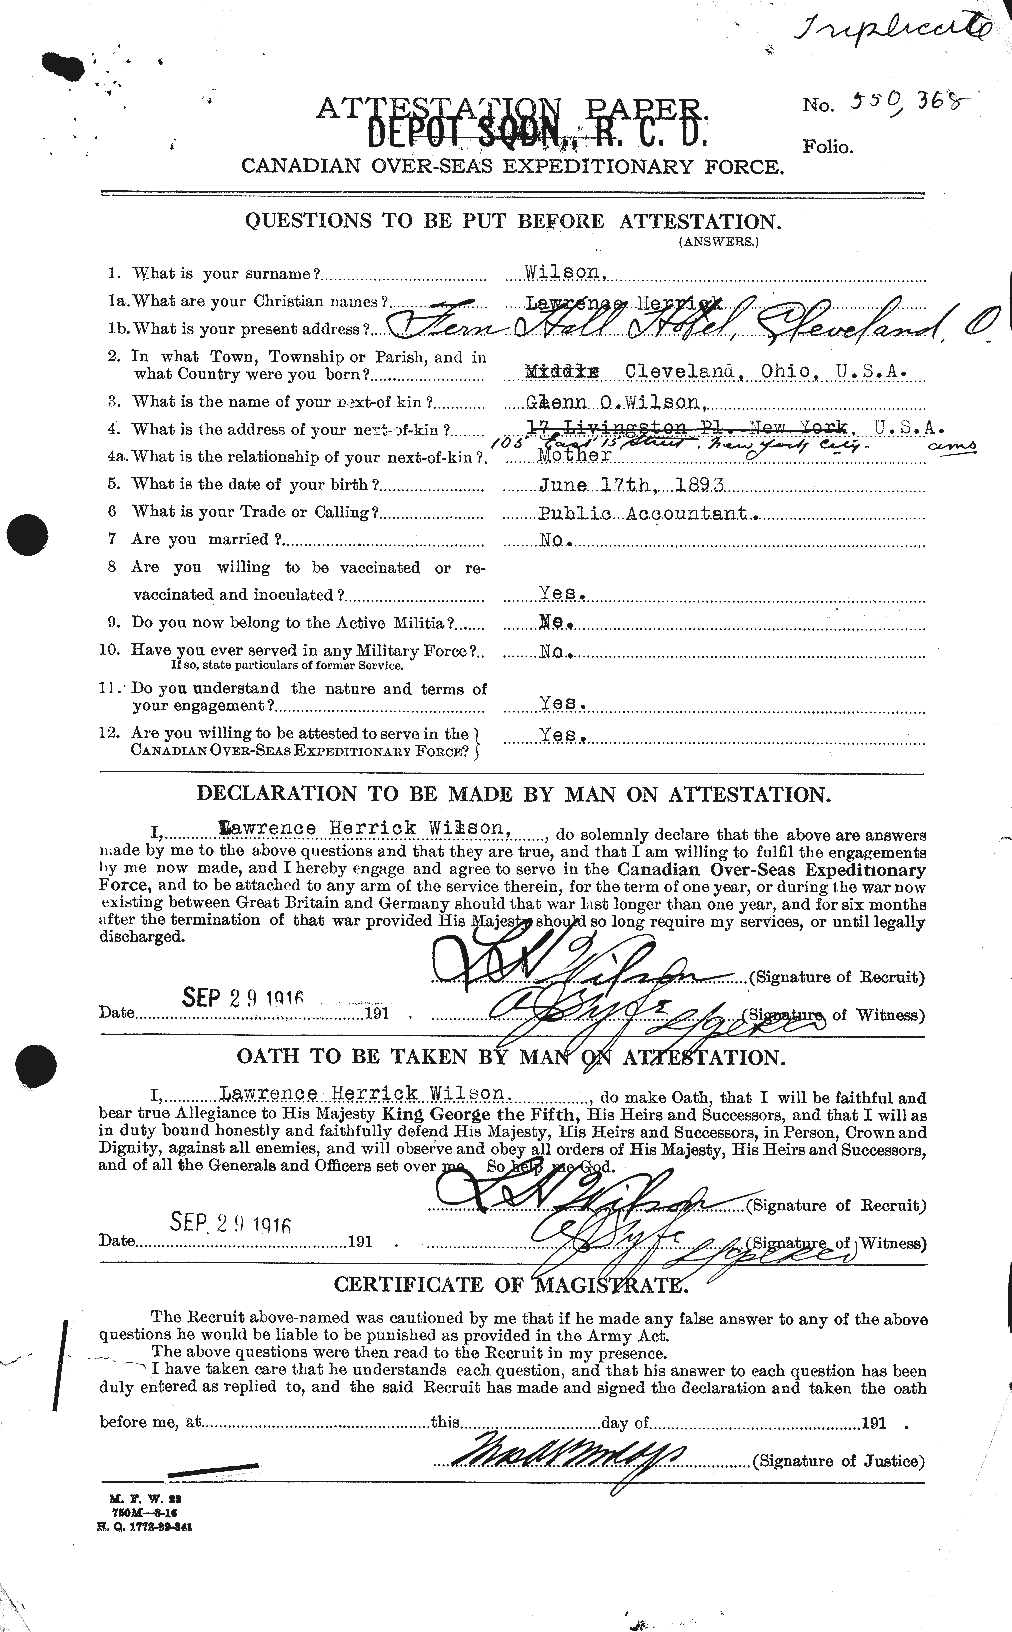 Dossiers du Personnel de la Première Guerre mondiale - CEC 678622a